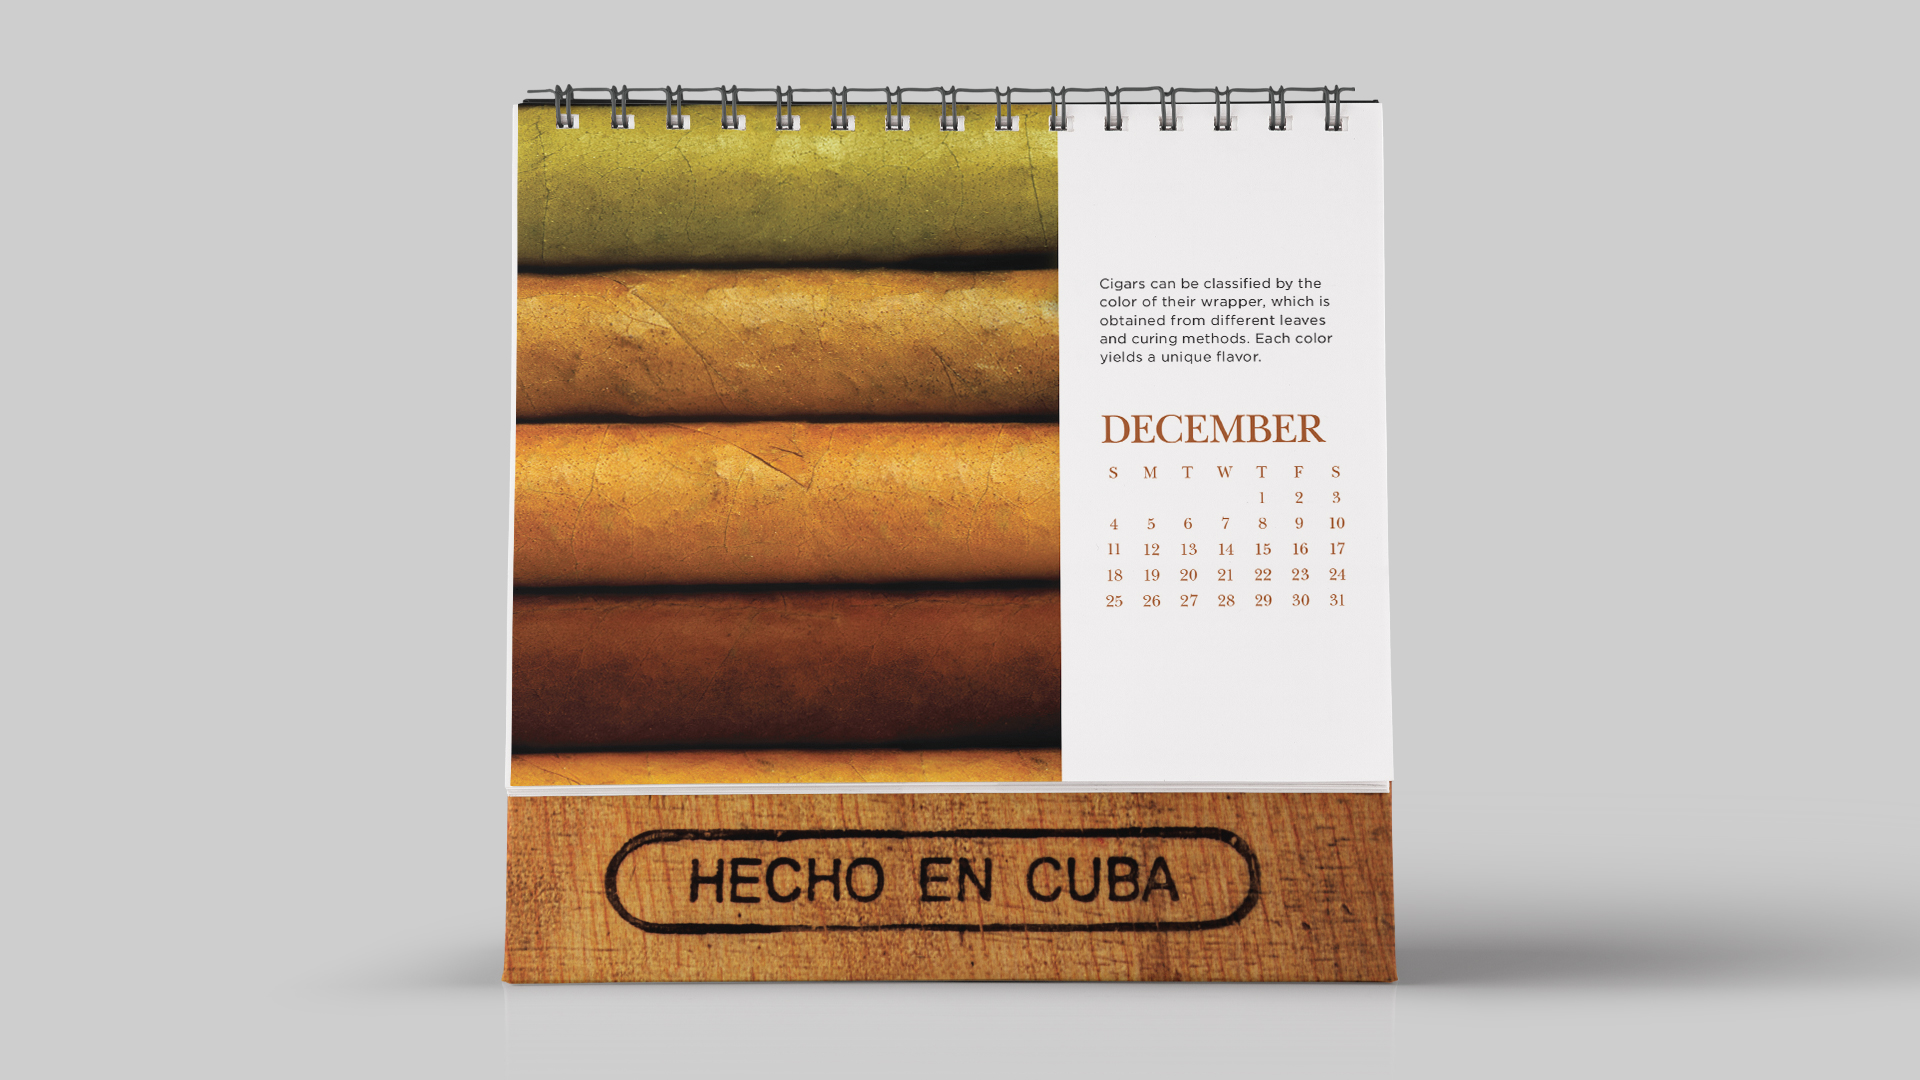 Made in Cuba History of Cigars Calendar December